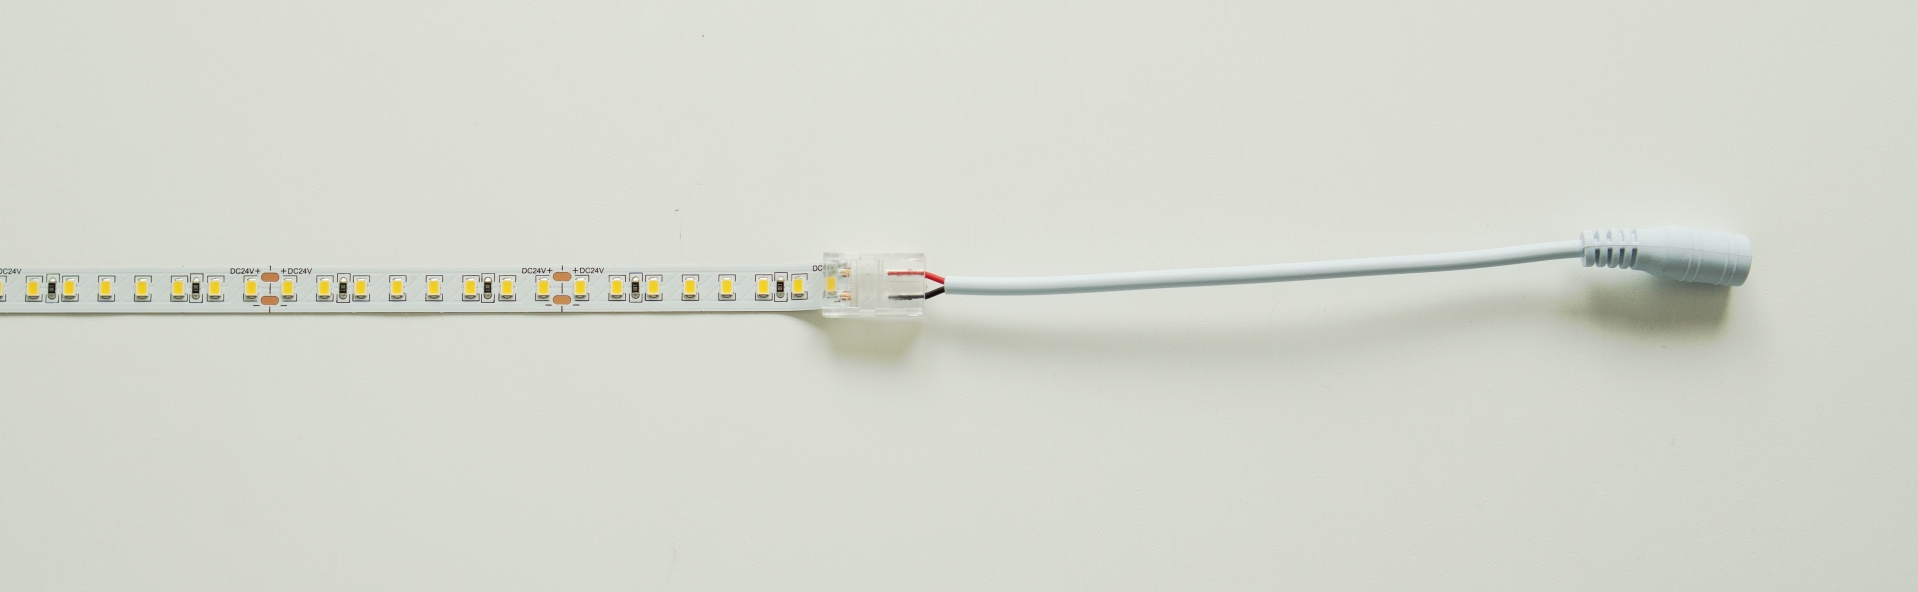 Anschlussdiagramm von LED-Streifen unter Verwendung eines doppelseitigen Steckers mit einer Buchse